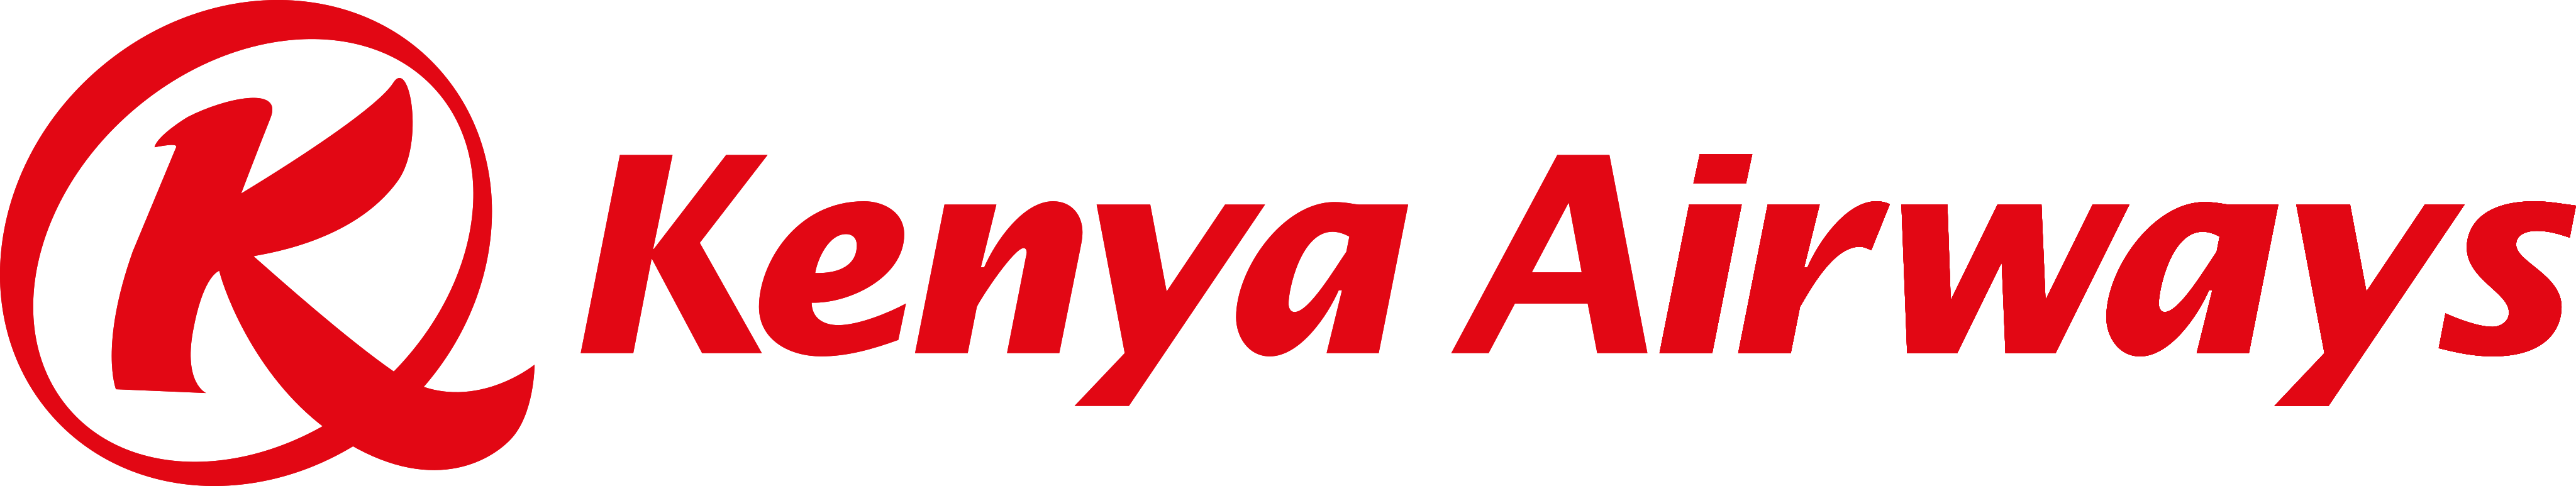 kenya airways logo 1 - Kenya Airways Logo